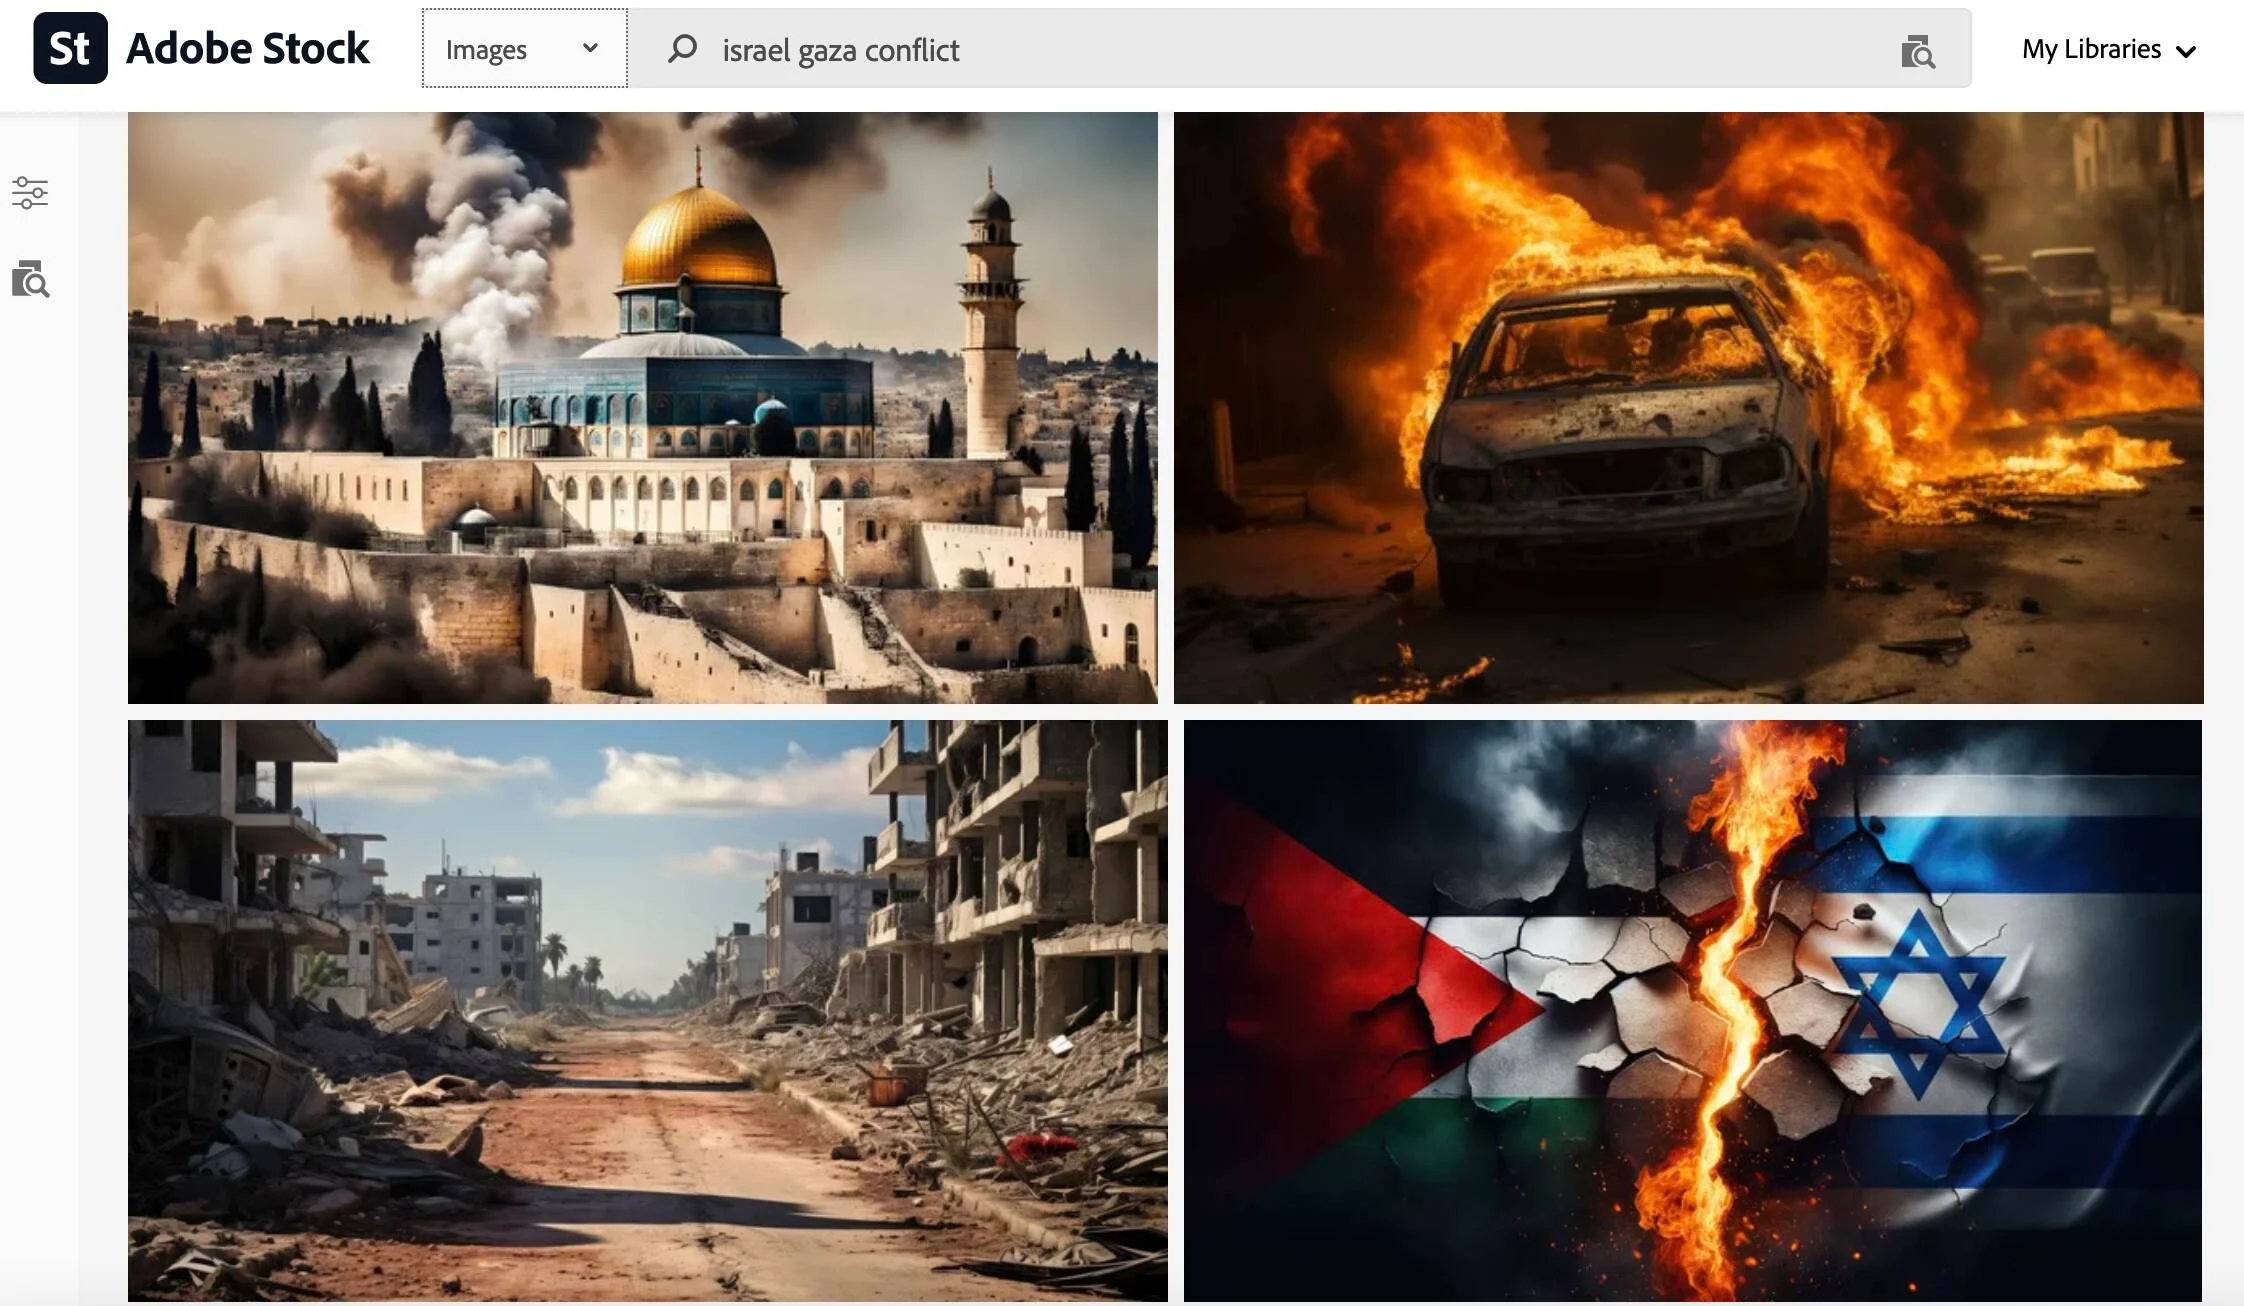 Adobe sprzedaje wygenerowane przez sztuczną inteligencję obrazy wojny izraelsko-hamskiej, które w doniesieniach prasowych podawane są jako prawdziwe.-2